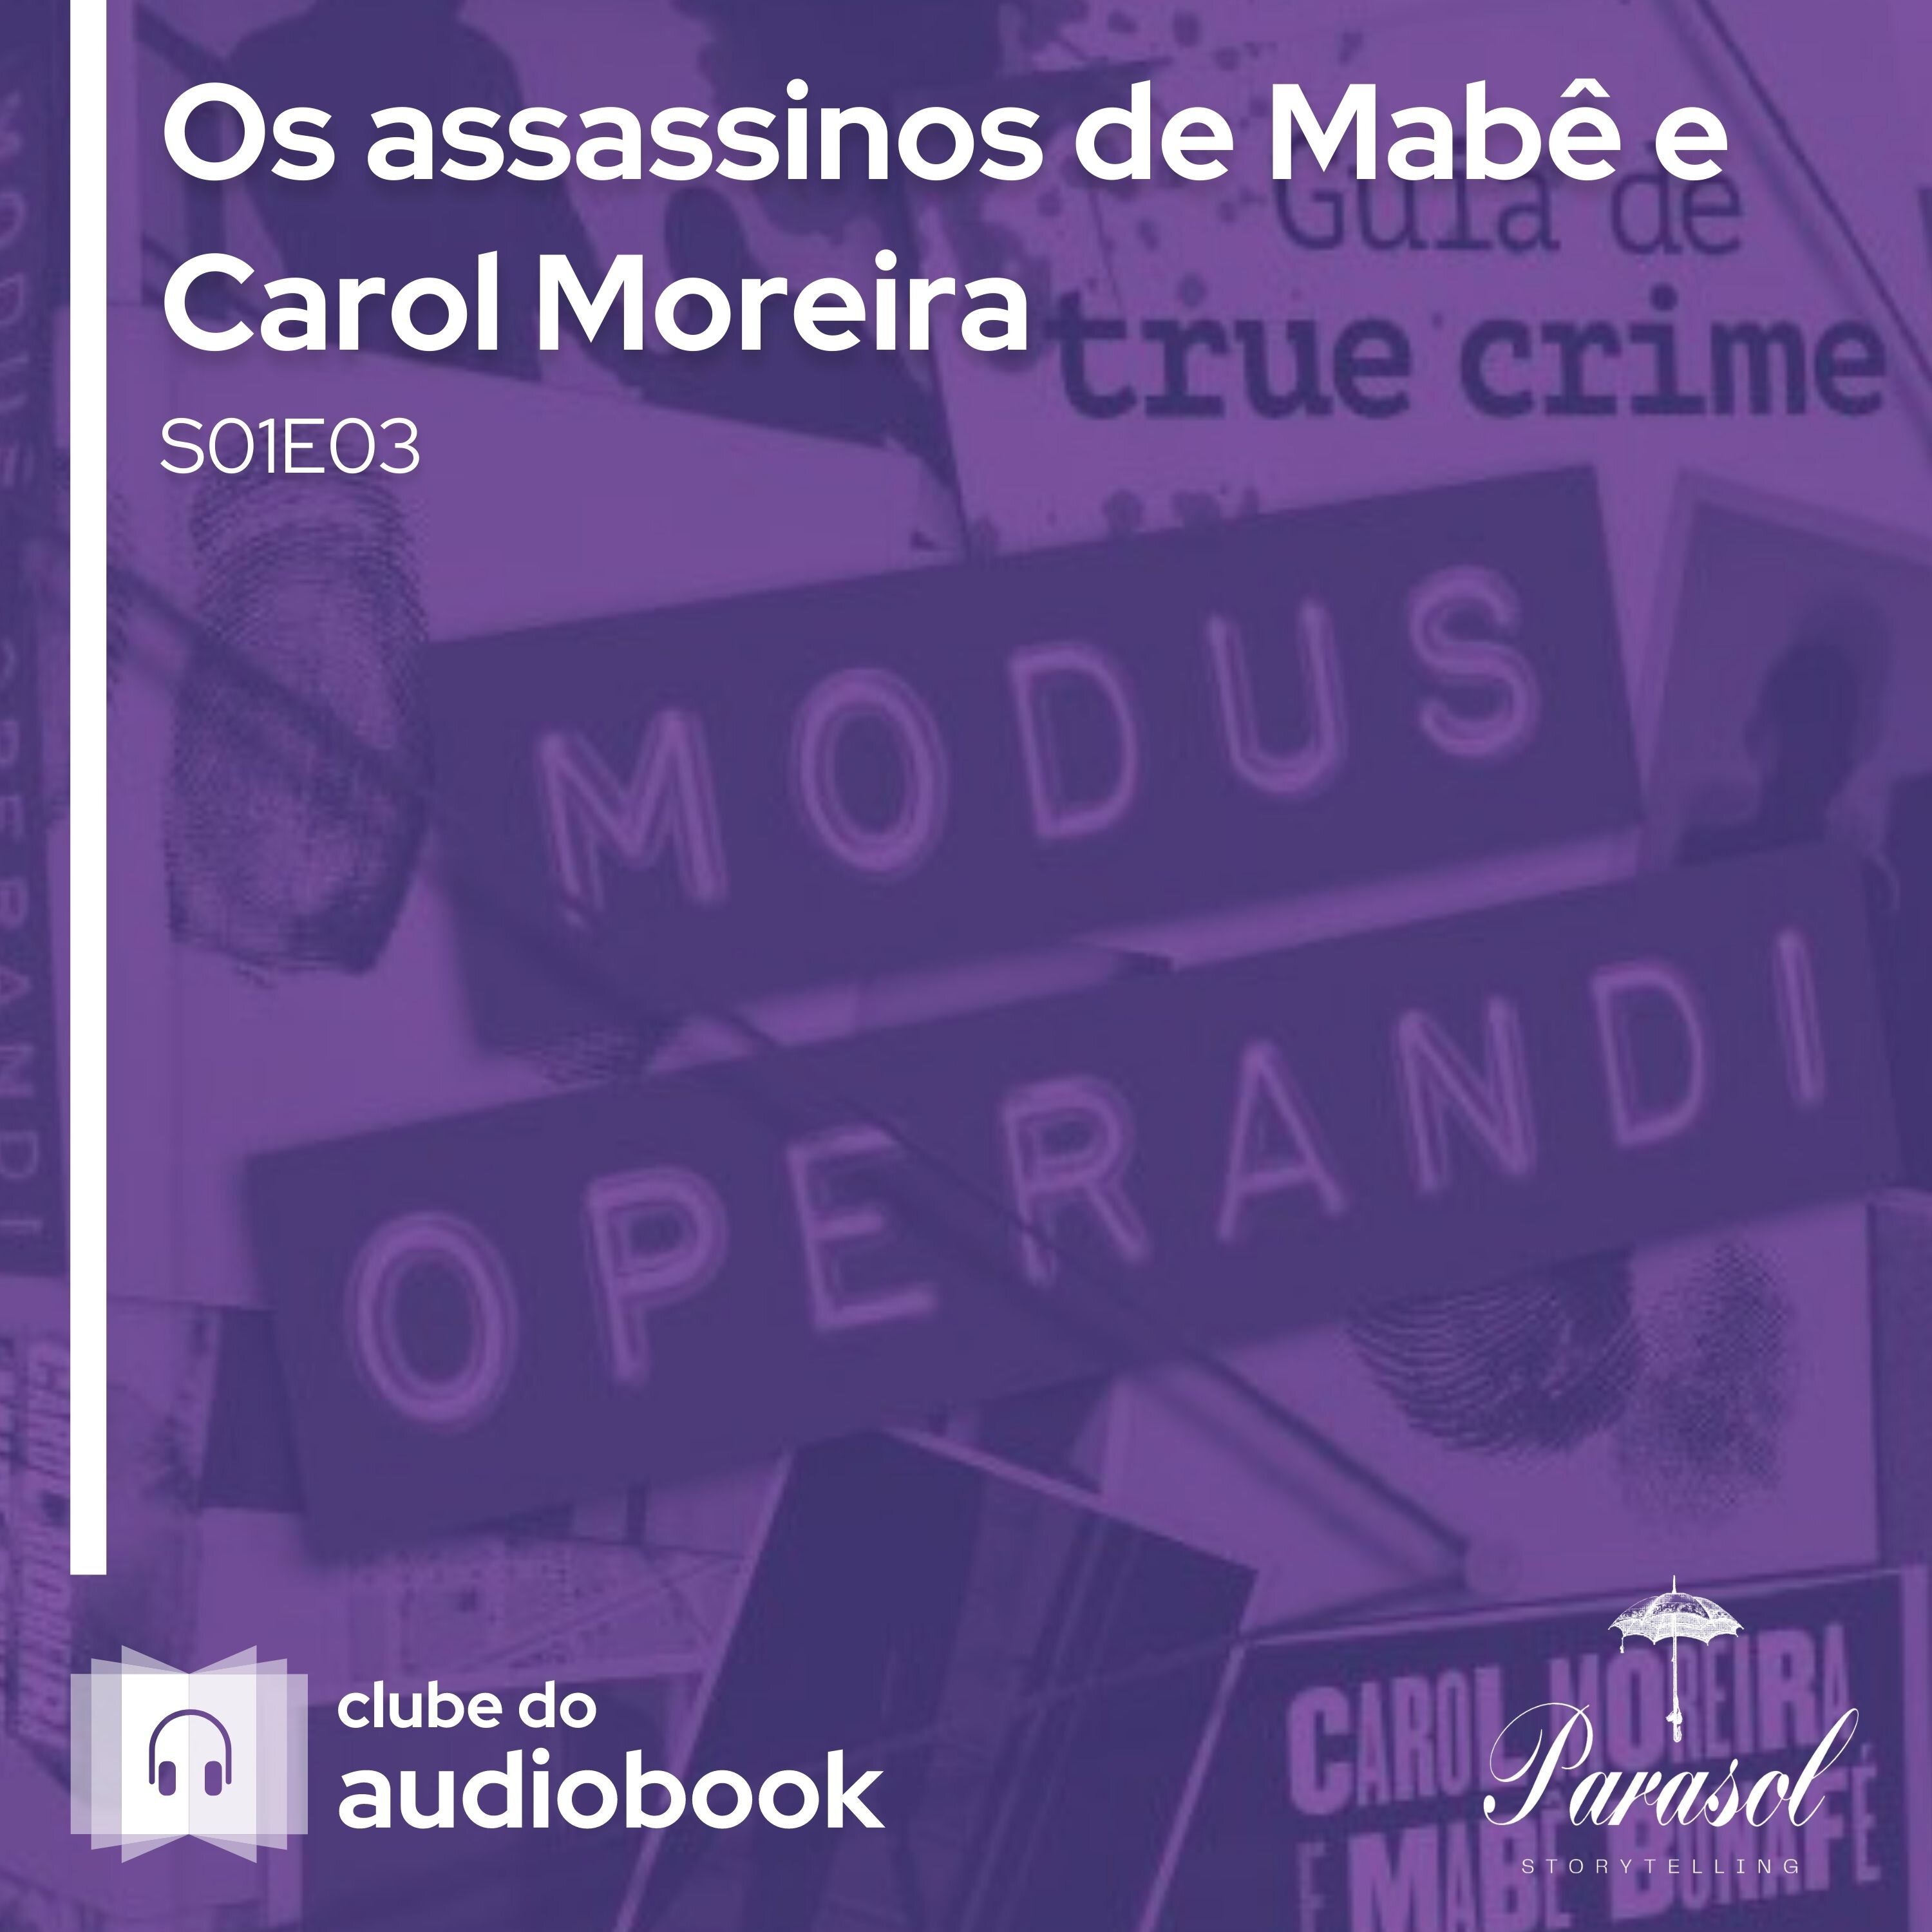 Os assassinos de Mabê e Carol Moreira - Clube do Audiobook - S01E03